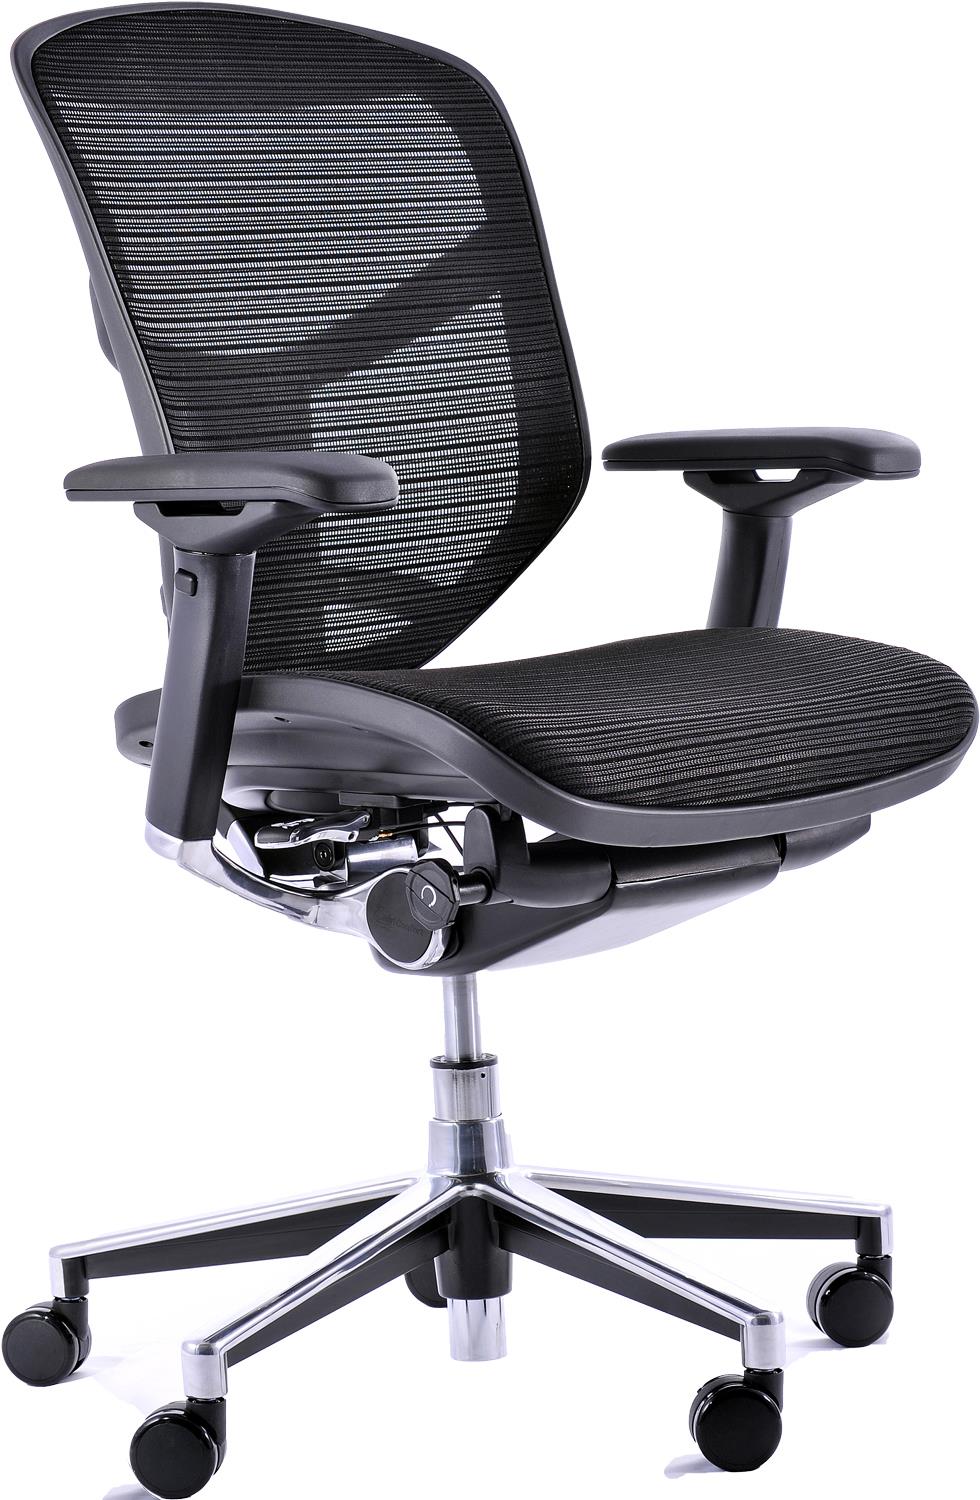 ergonomic mesh office chair da f f ad ececaej lam kmd